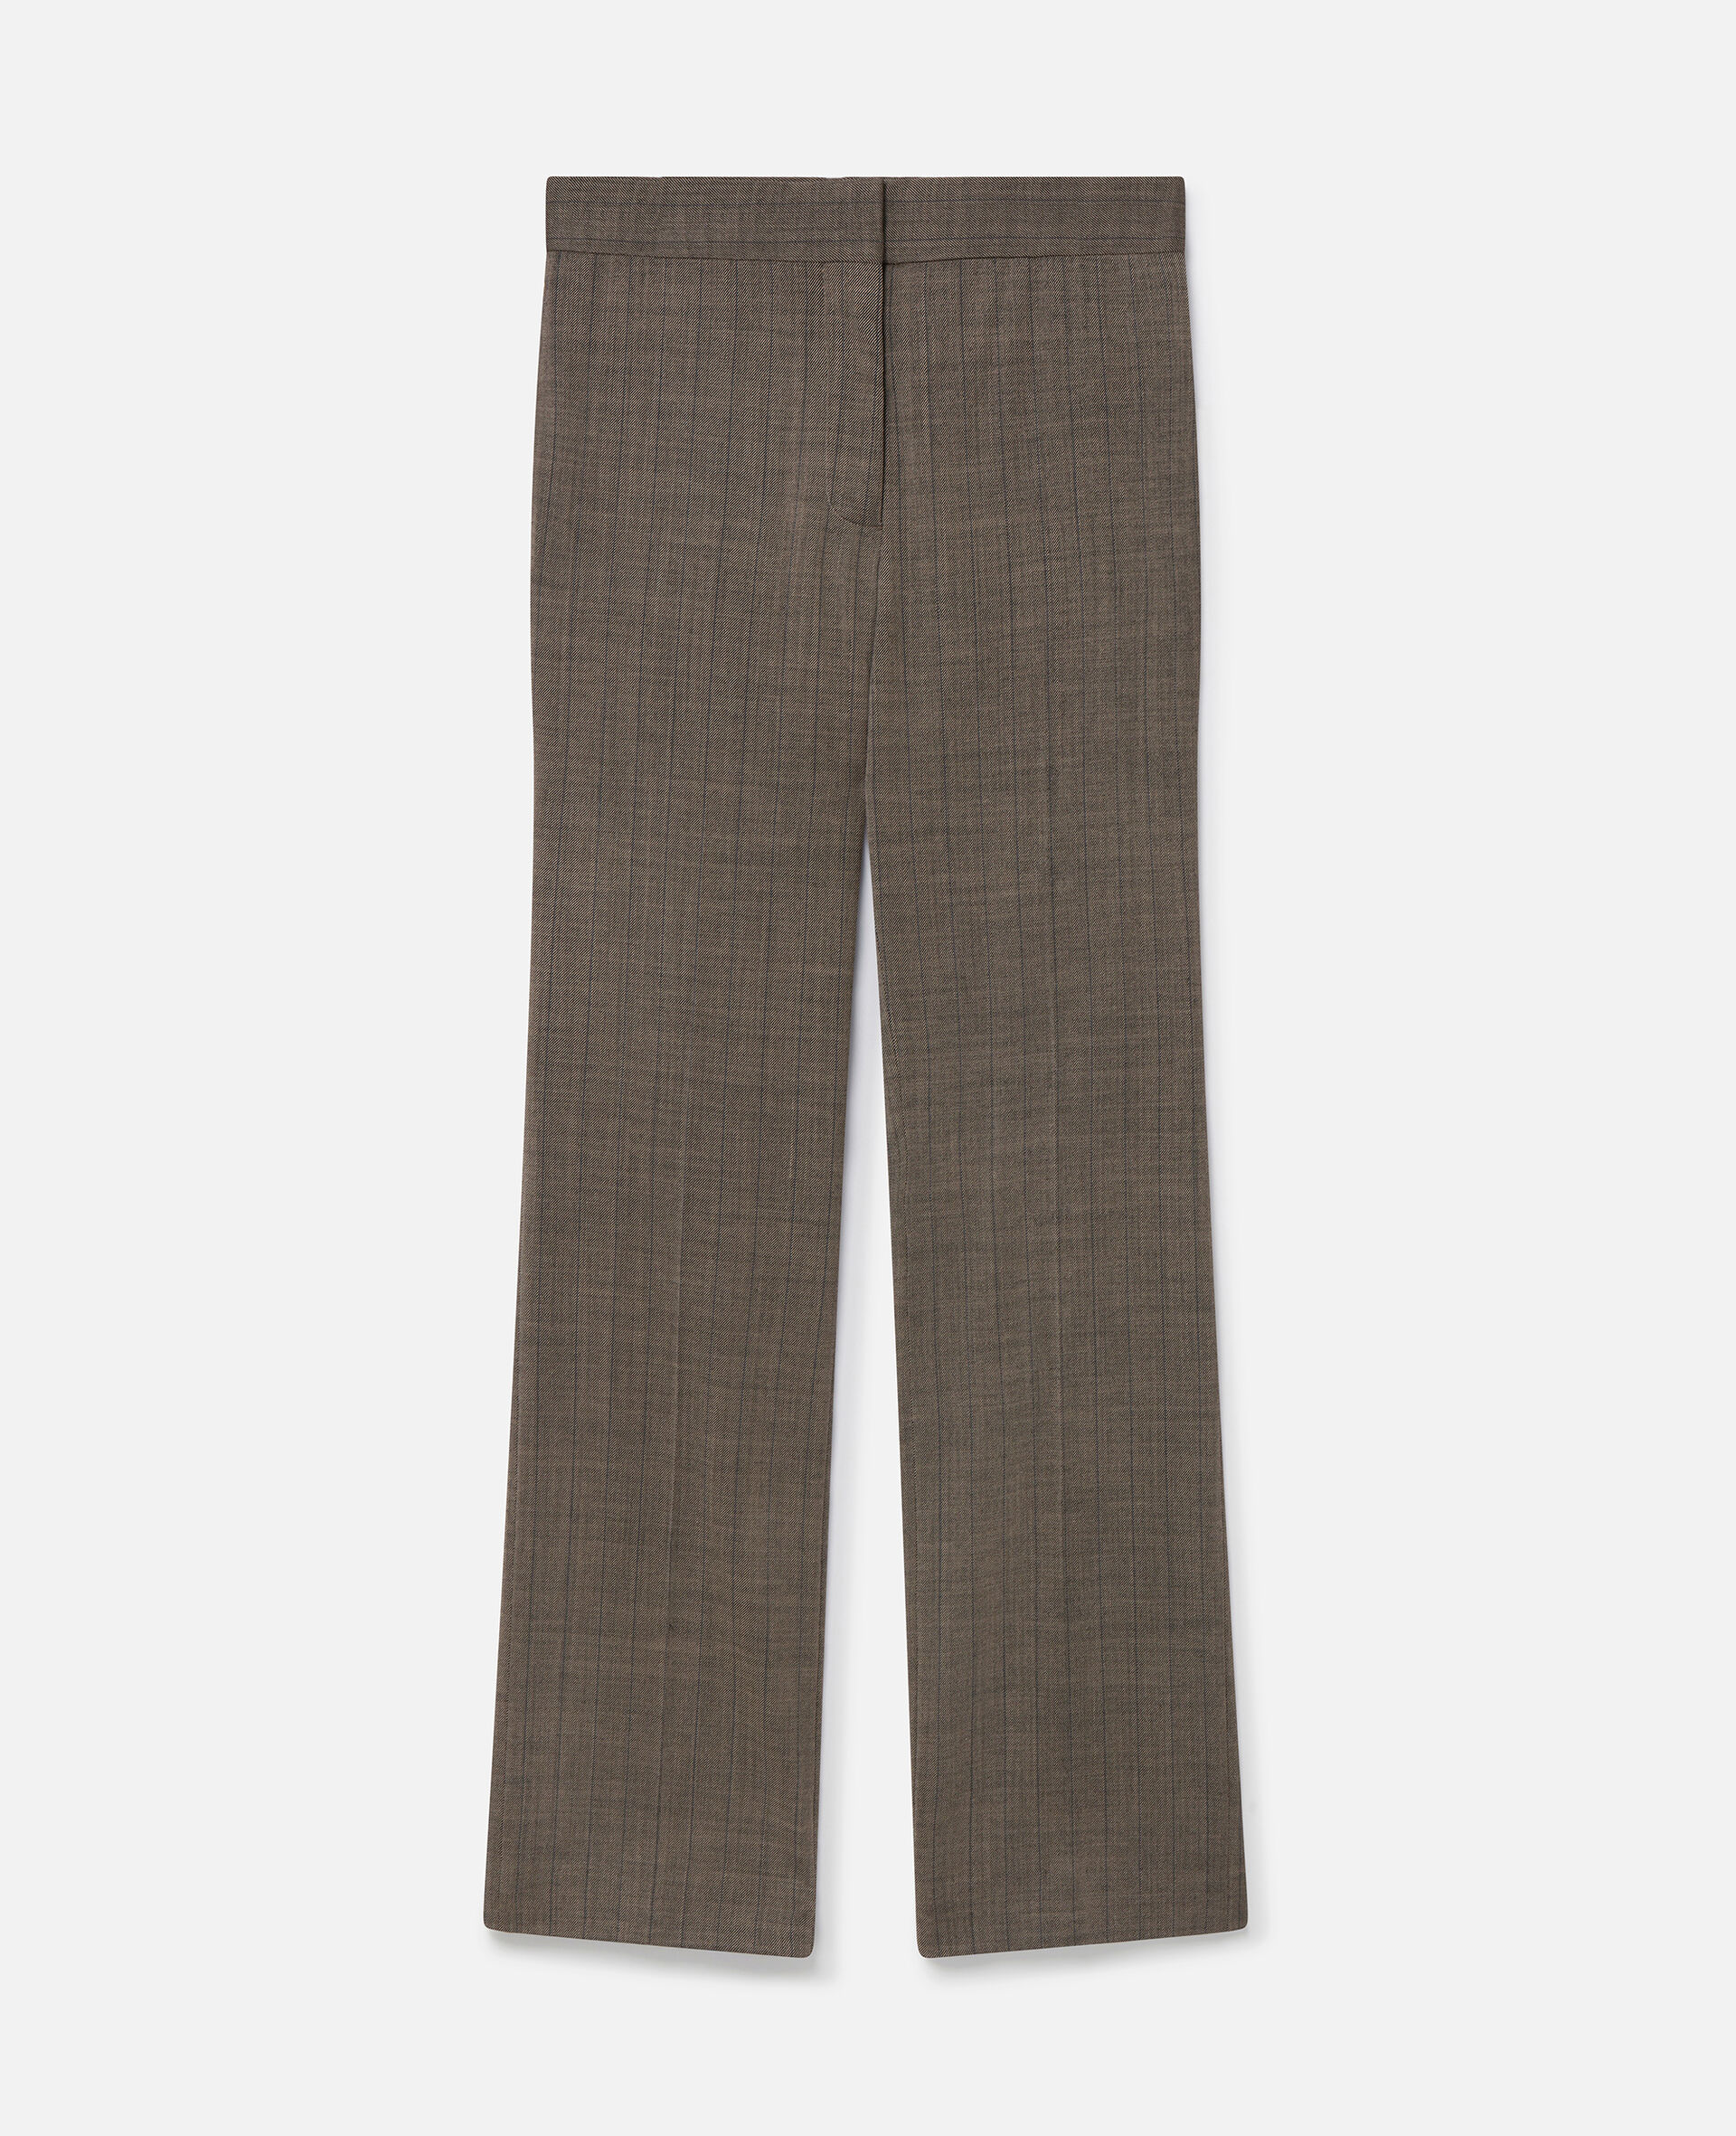 Hose aus Wolle mit mittelhohem Bund, geradem Hosenbein und Karomuster -Bunt-medium